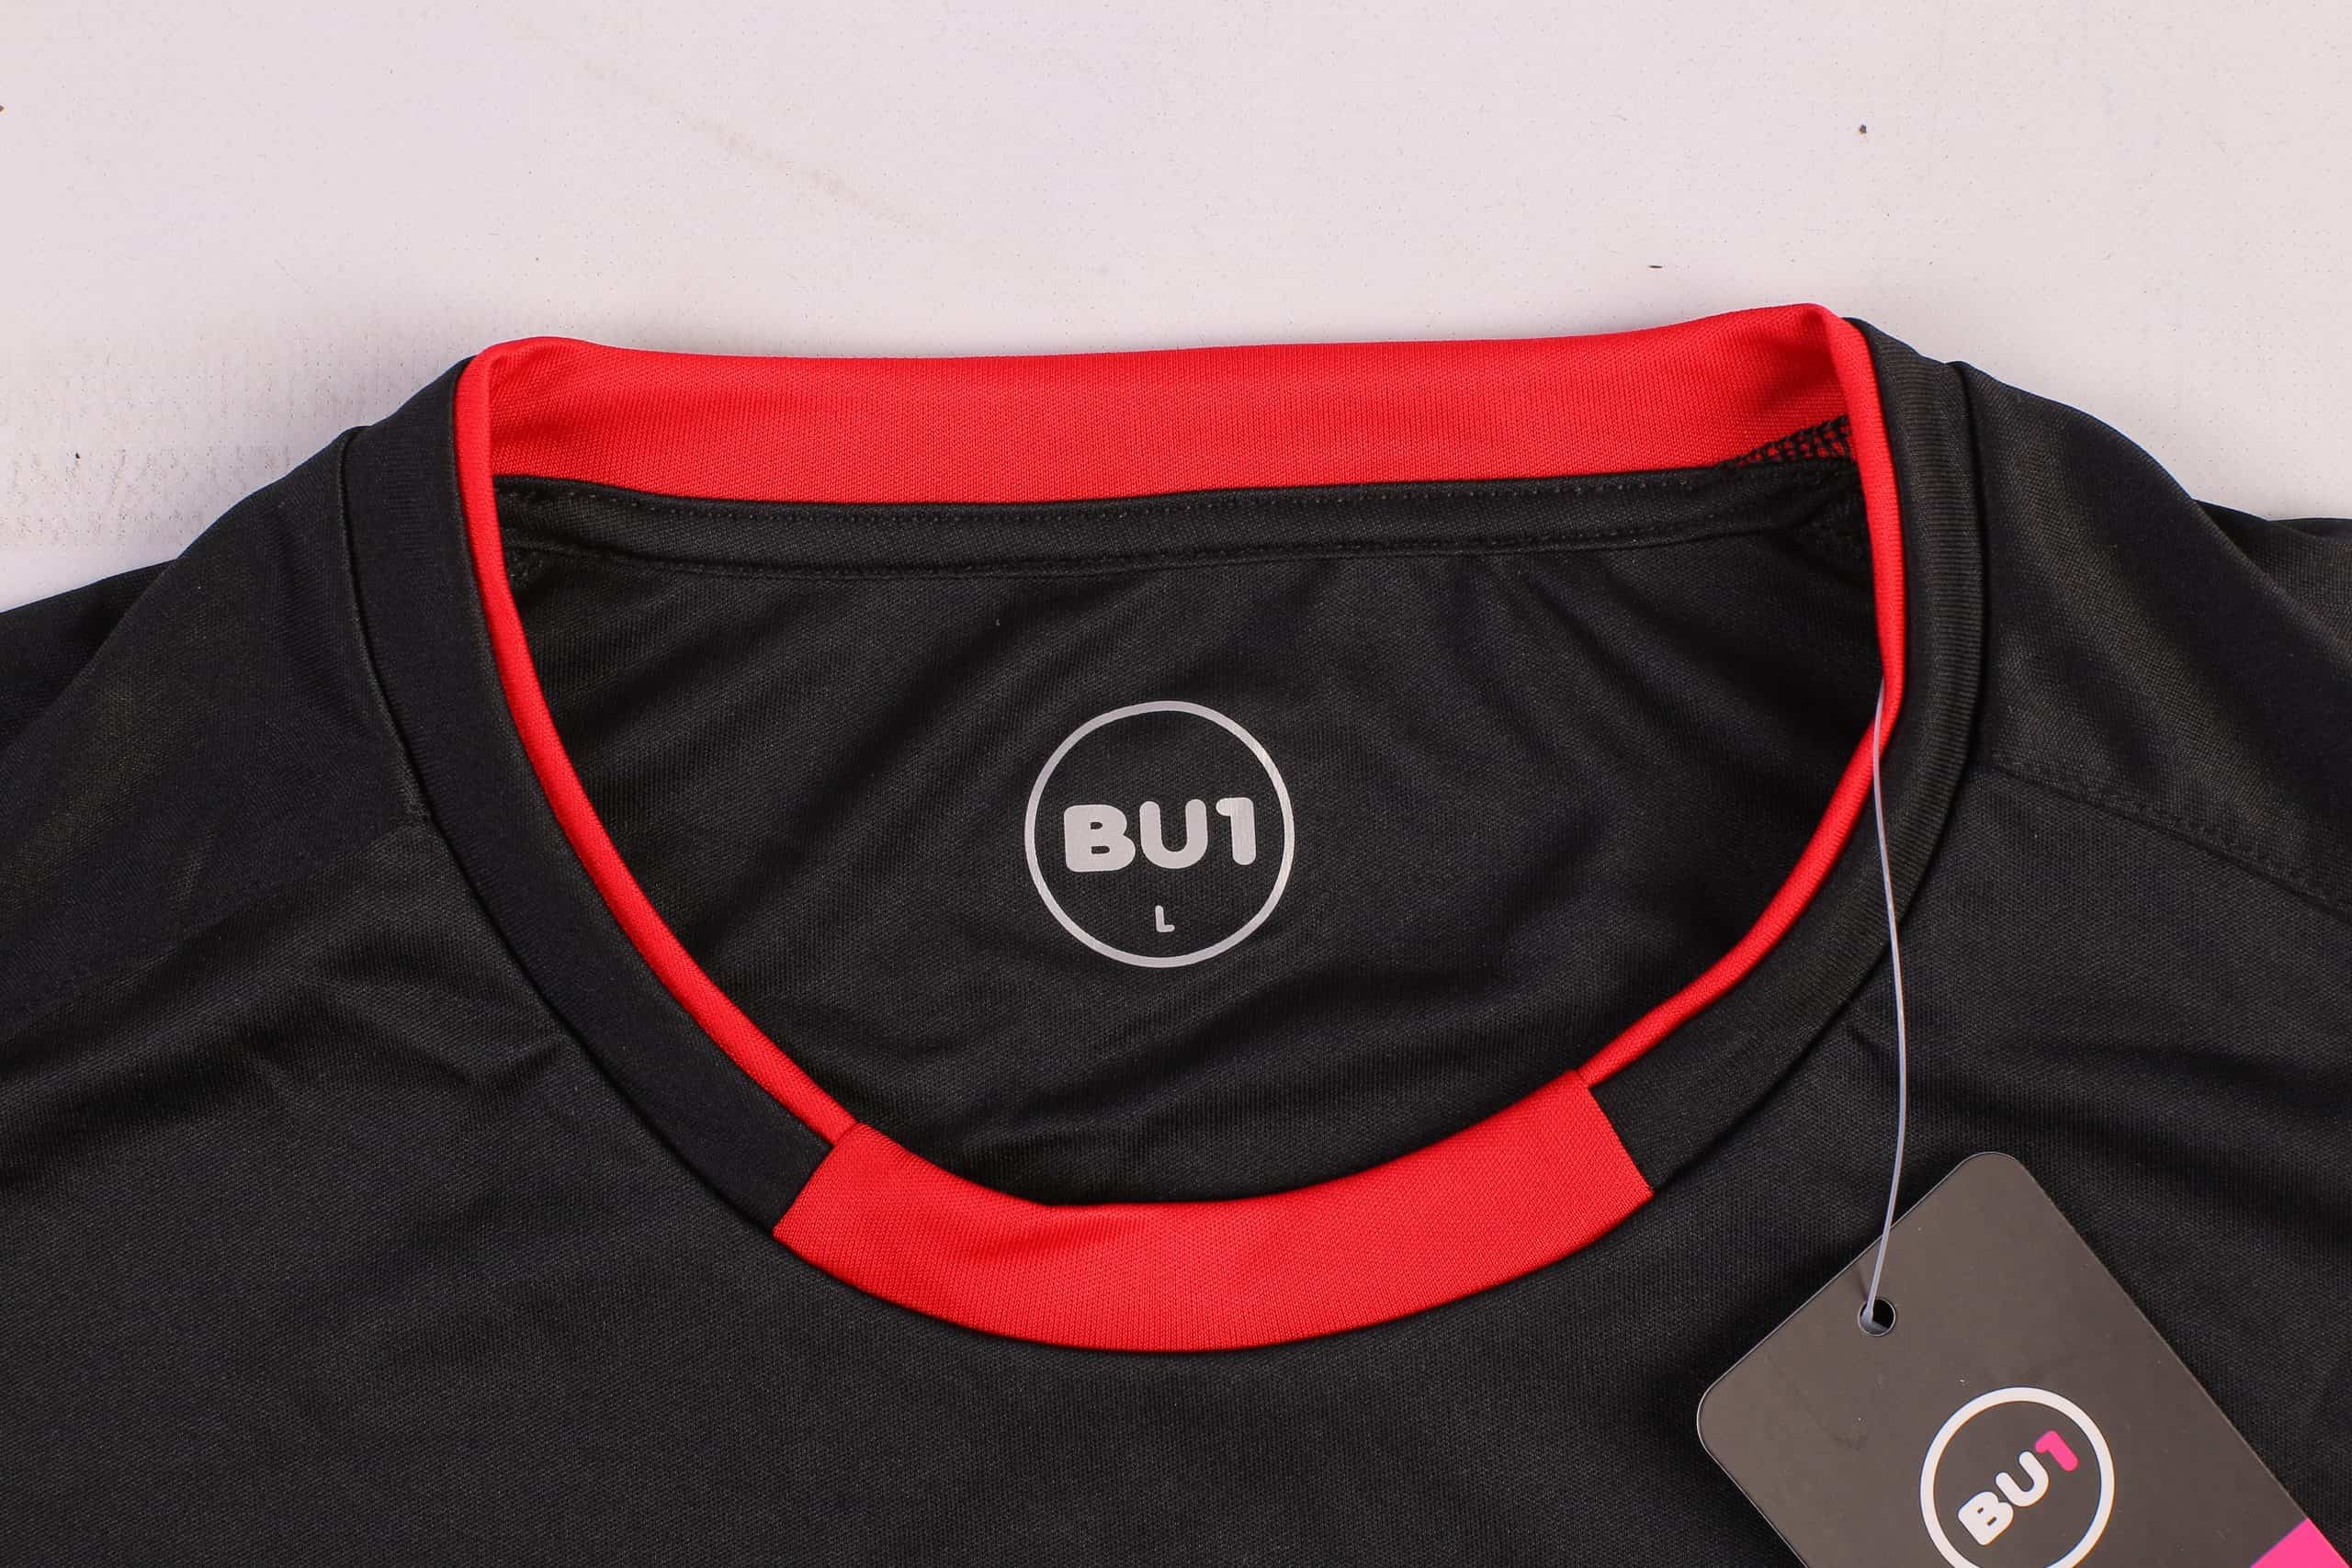 BU1 dres 20 černo-červený